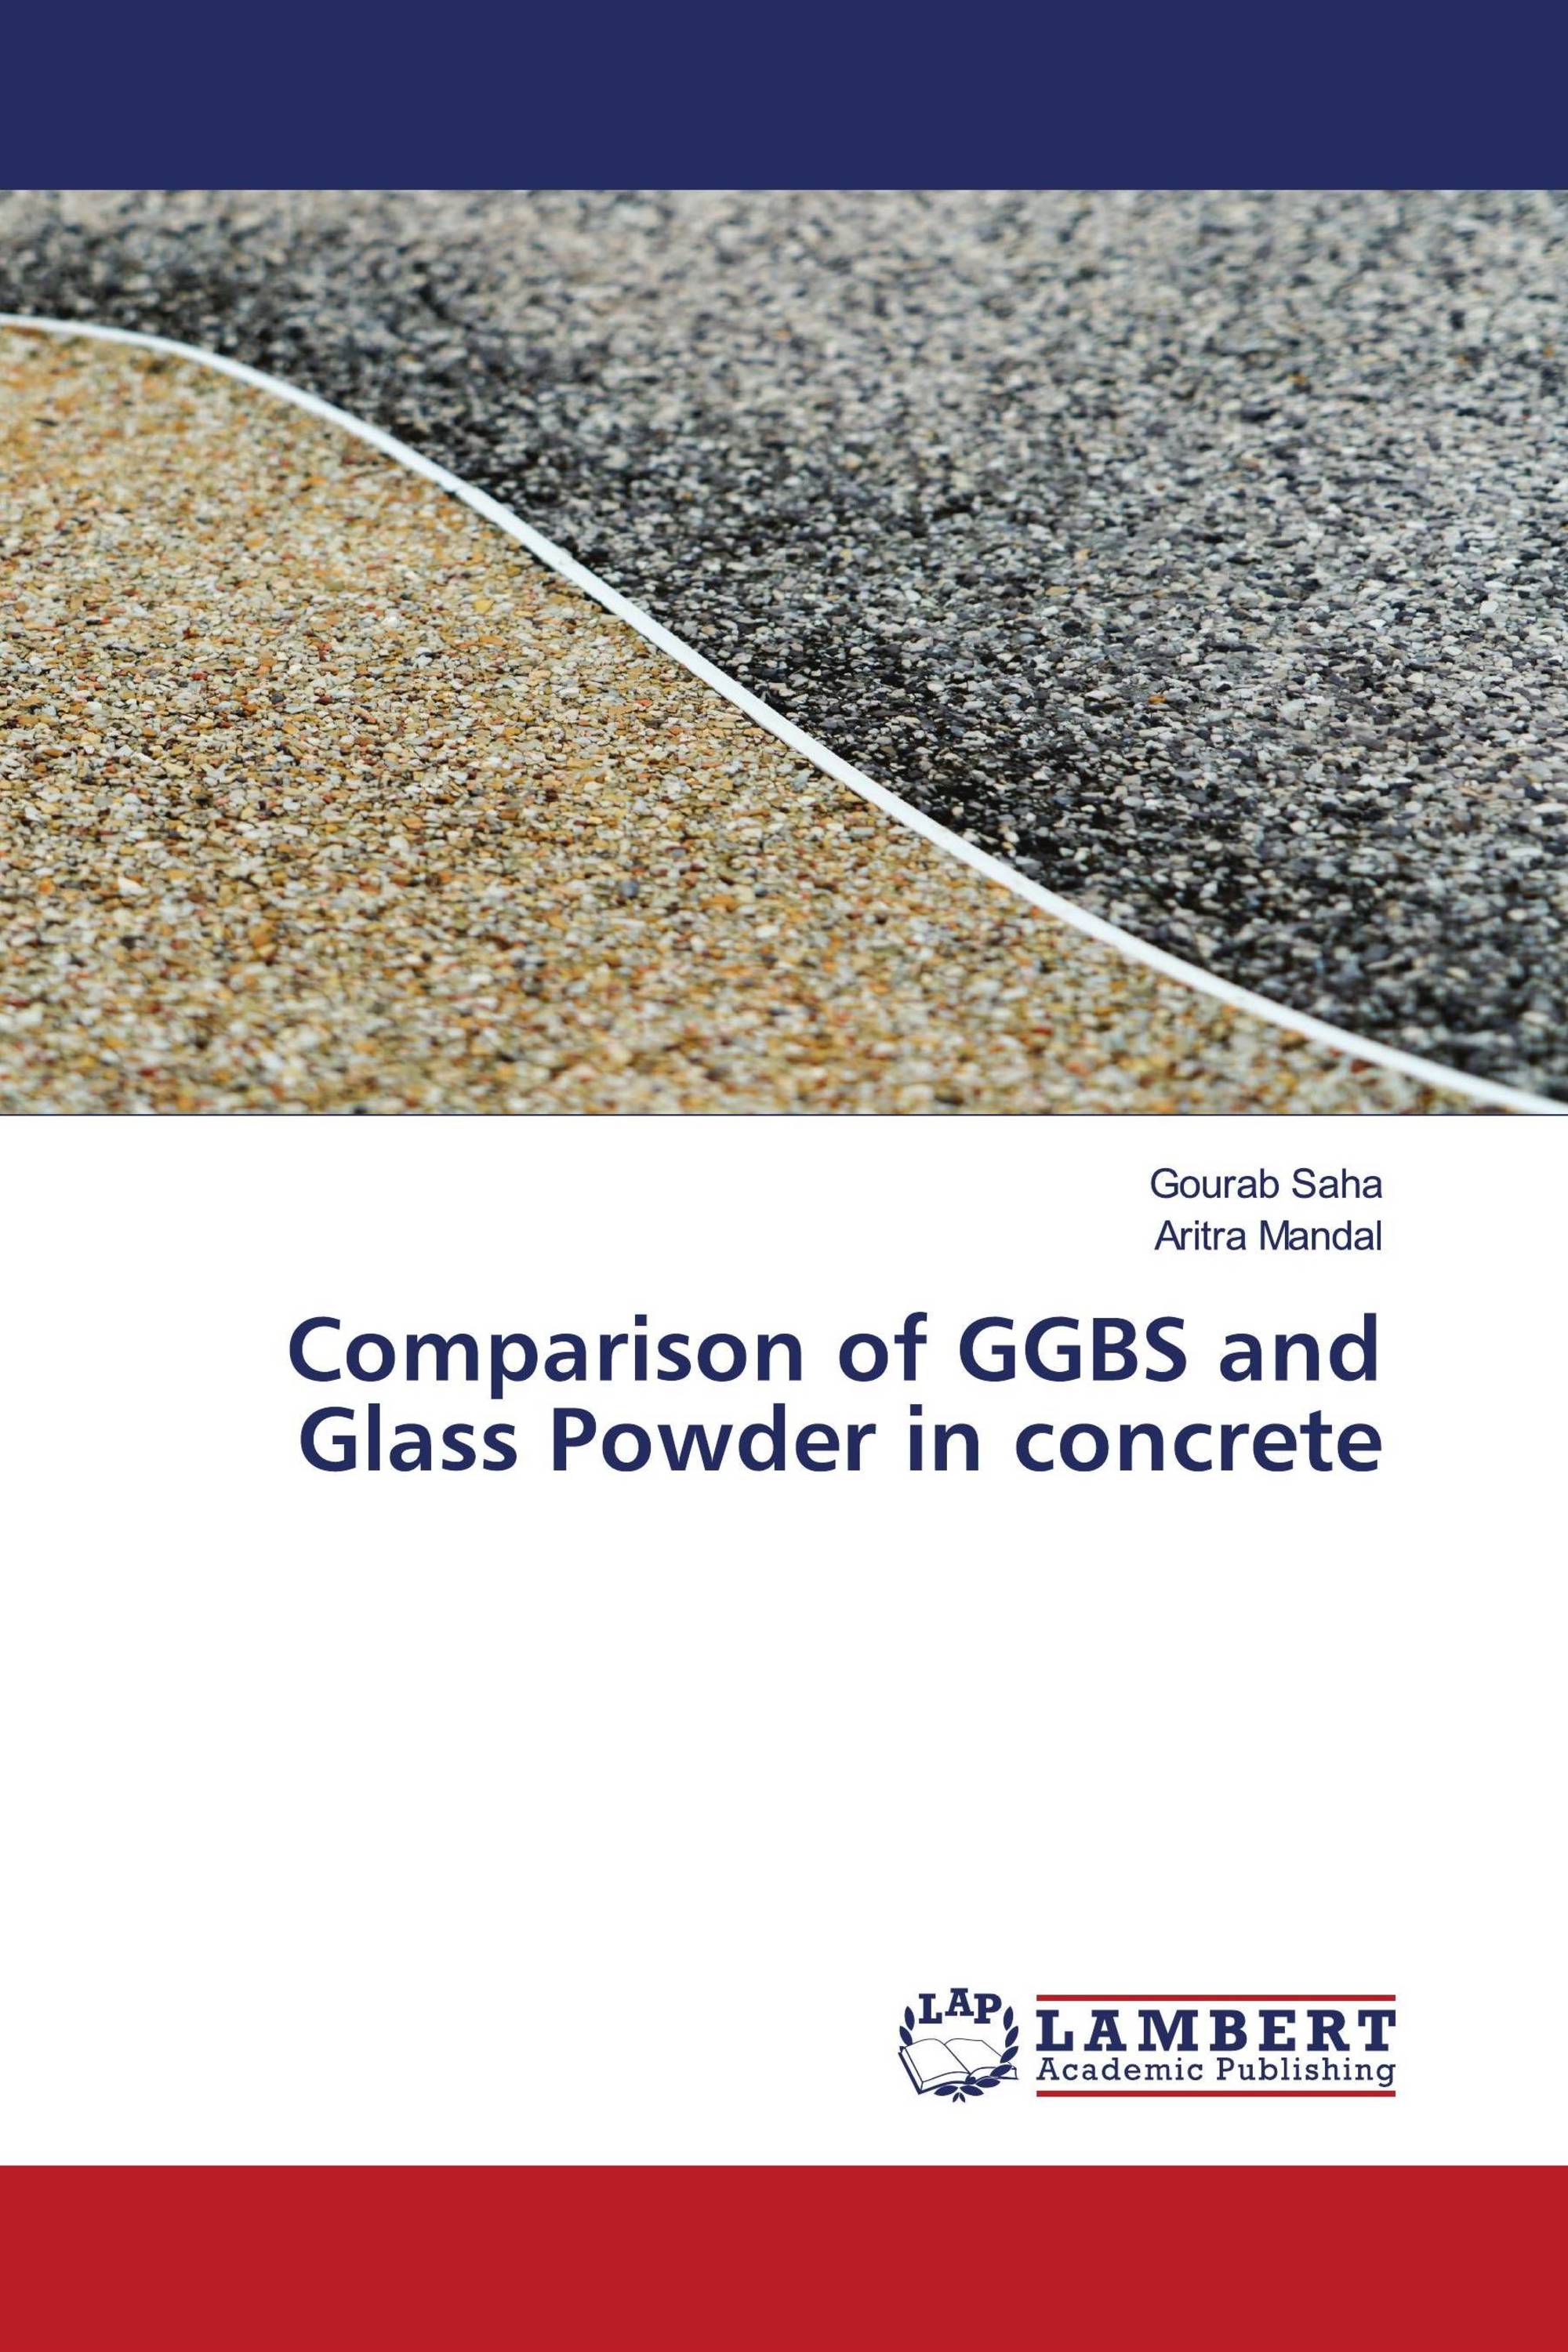 Comparison of GGBS and Glass Powder in concrete